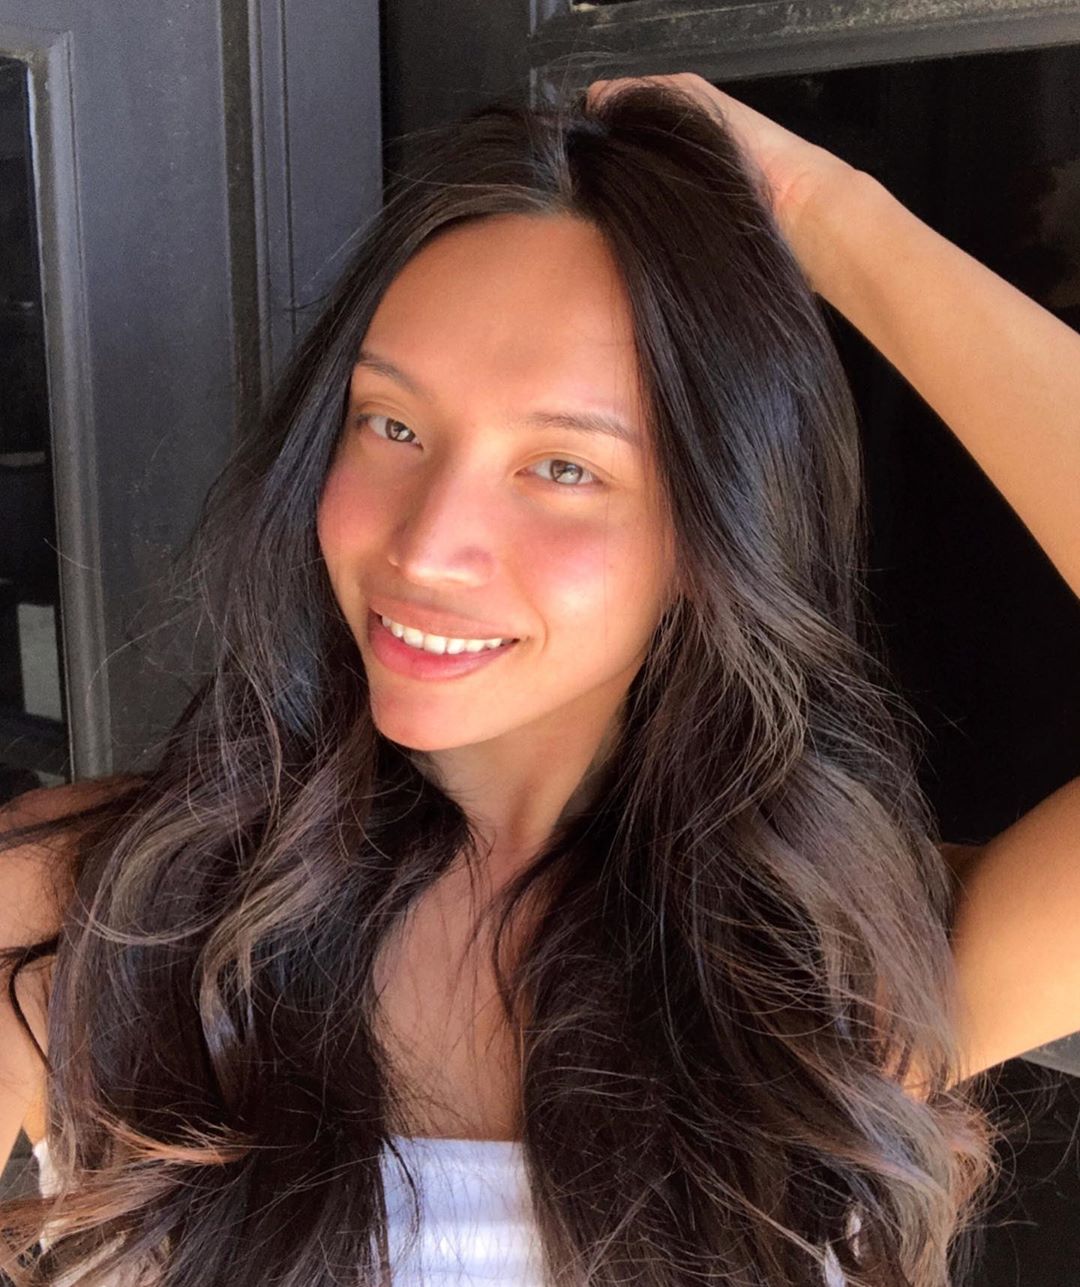 Kataluna Enriquez - Most Beautiful Transgender Model 